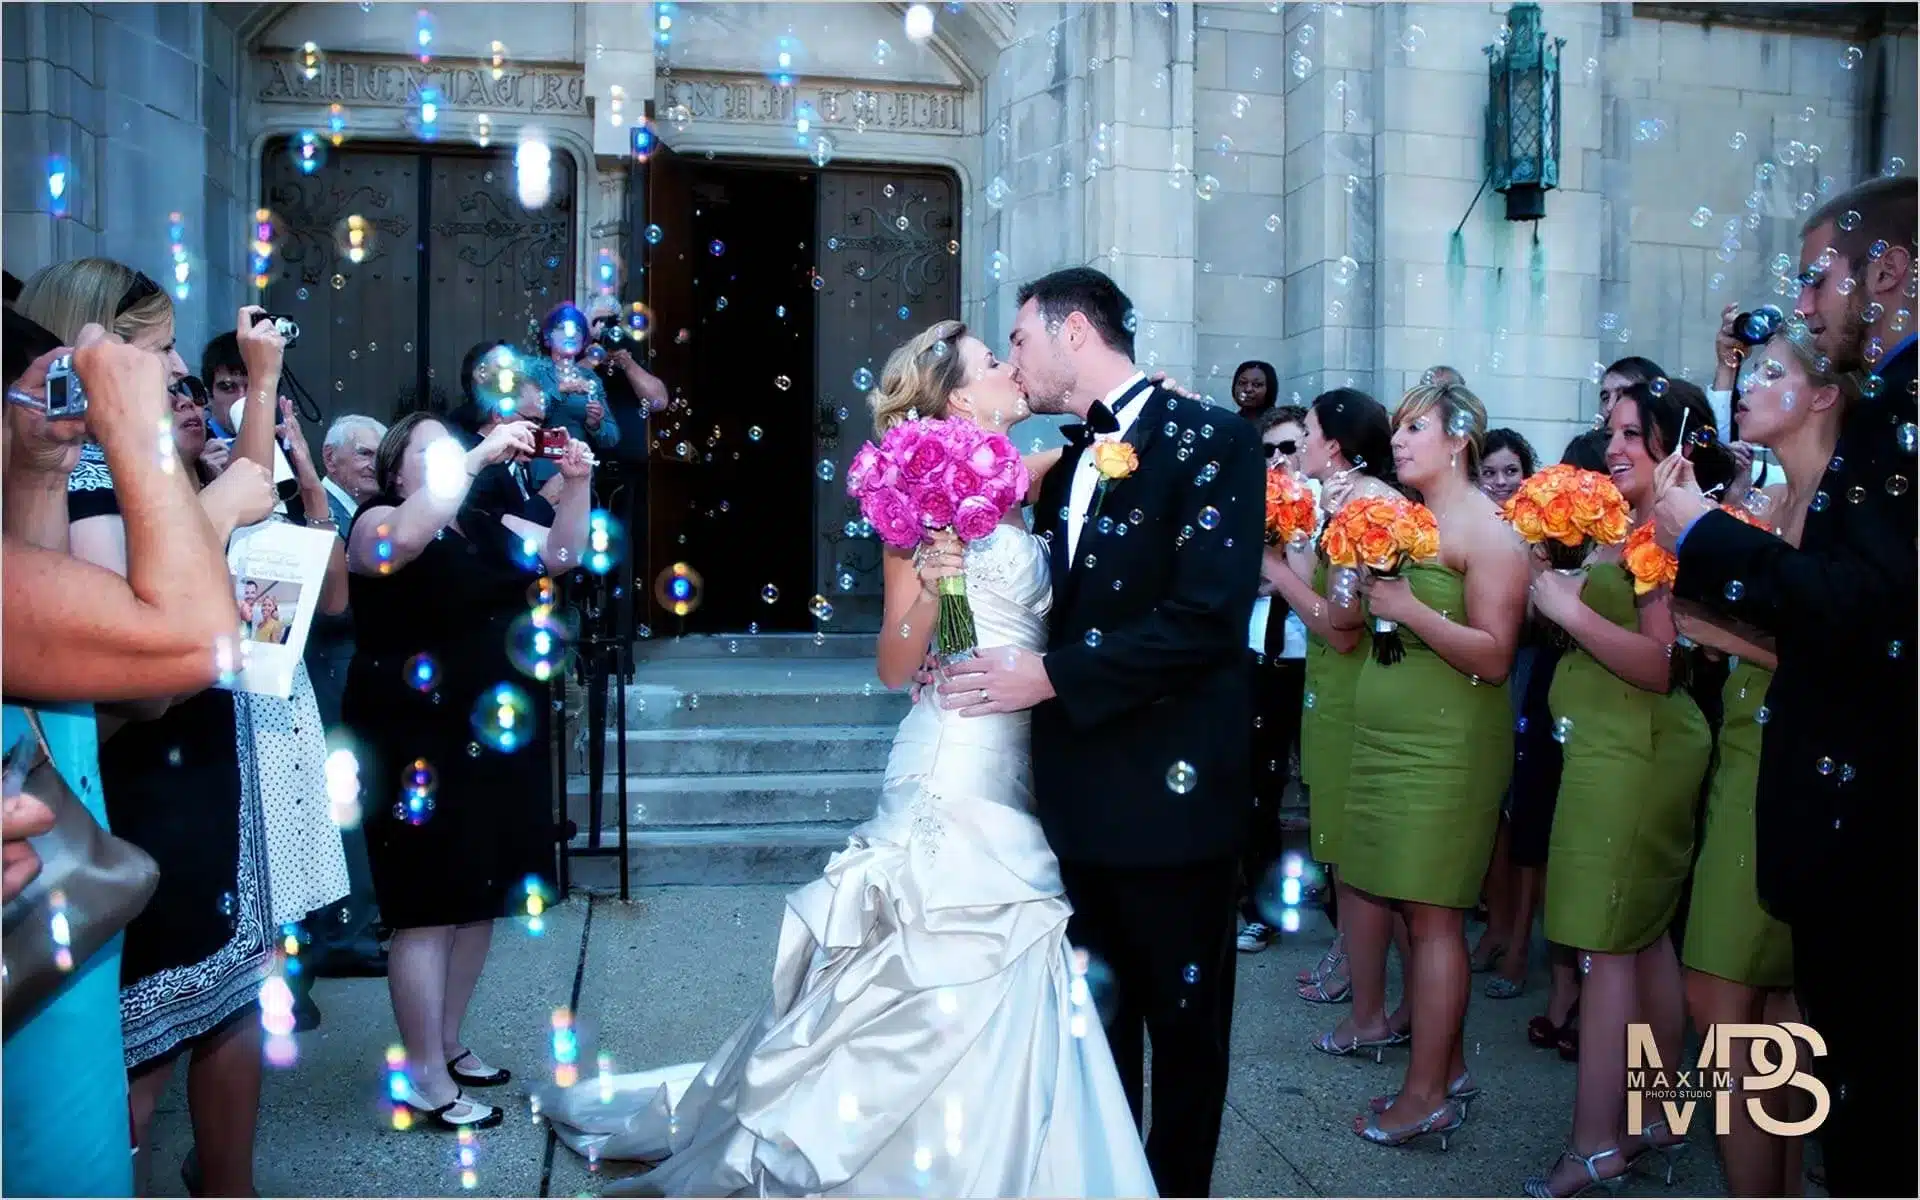 average wedding photographer cost, Top 10 factors for Average Wedding Photographer cost